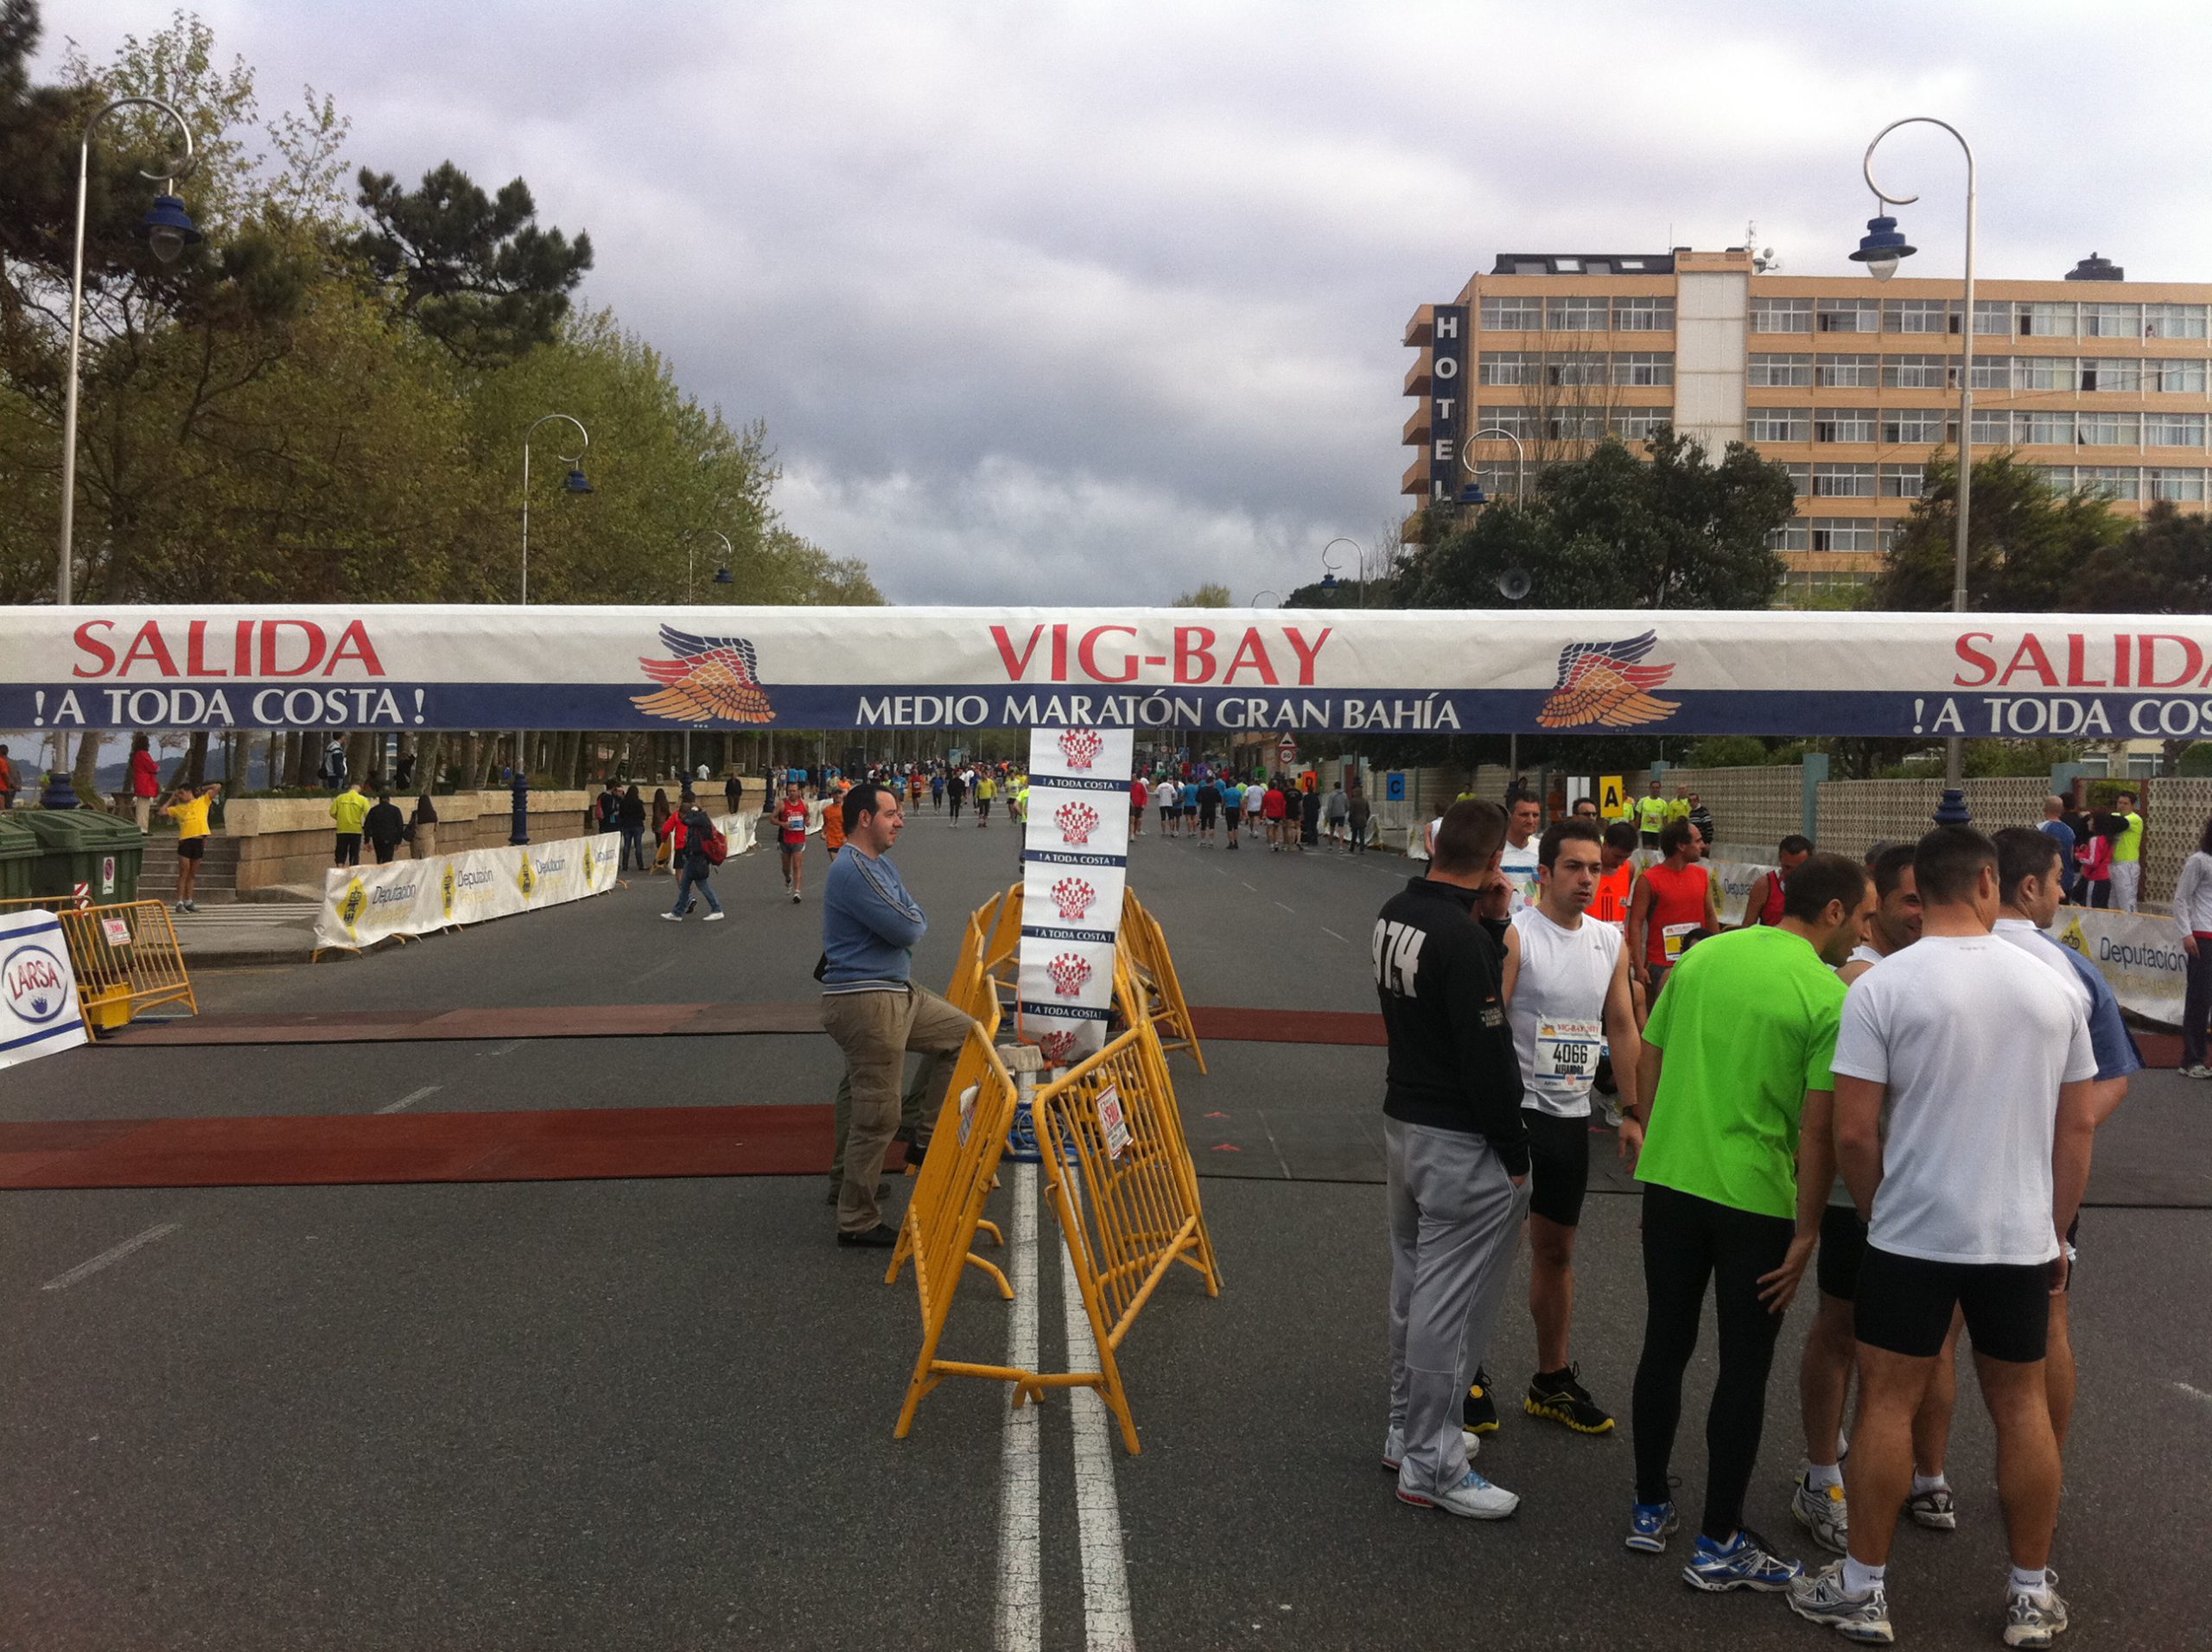 Vig-Bay 2011: La Media Maraton mas bonita de España